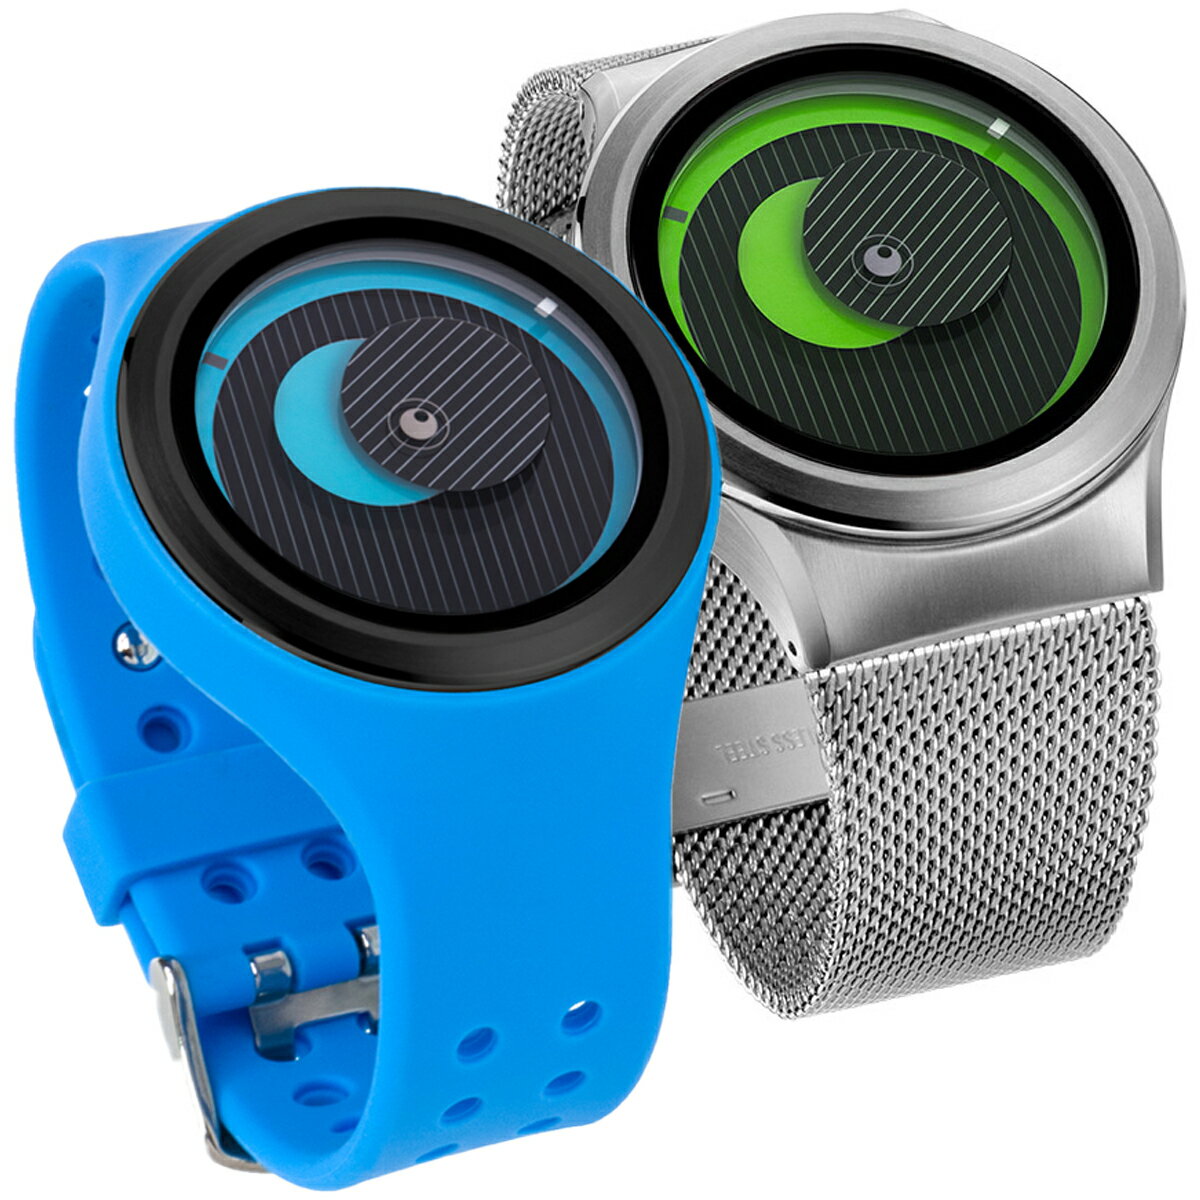 ZEROO ゼロ SECRET UNIVERSE シークレット・ユニバース 腕時計 デザイナーズウォッチ おしゃれ シンプル デザイン ファッション 個性派ウォッチ 輝く盤面 珍しい